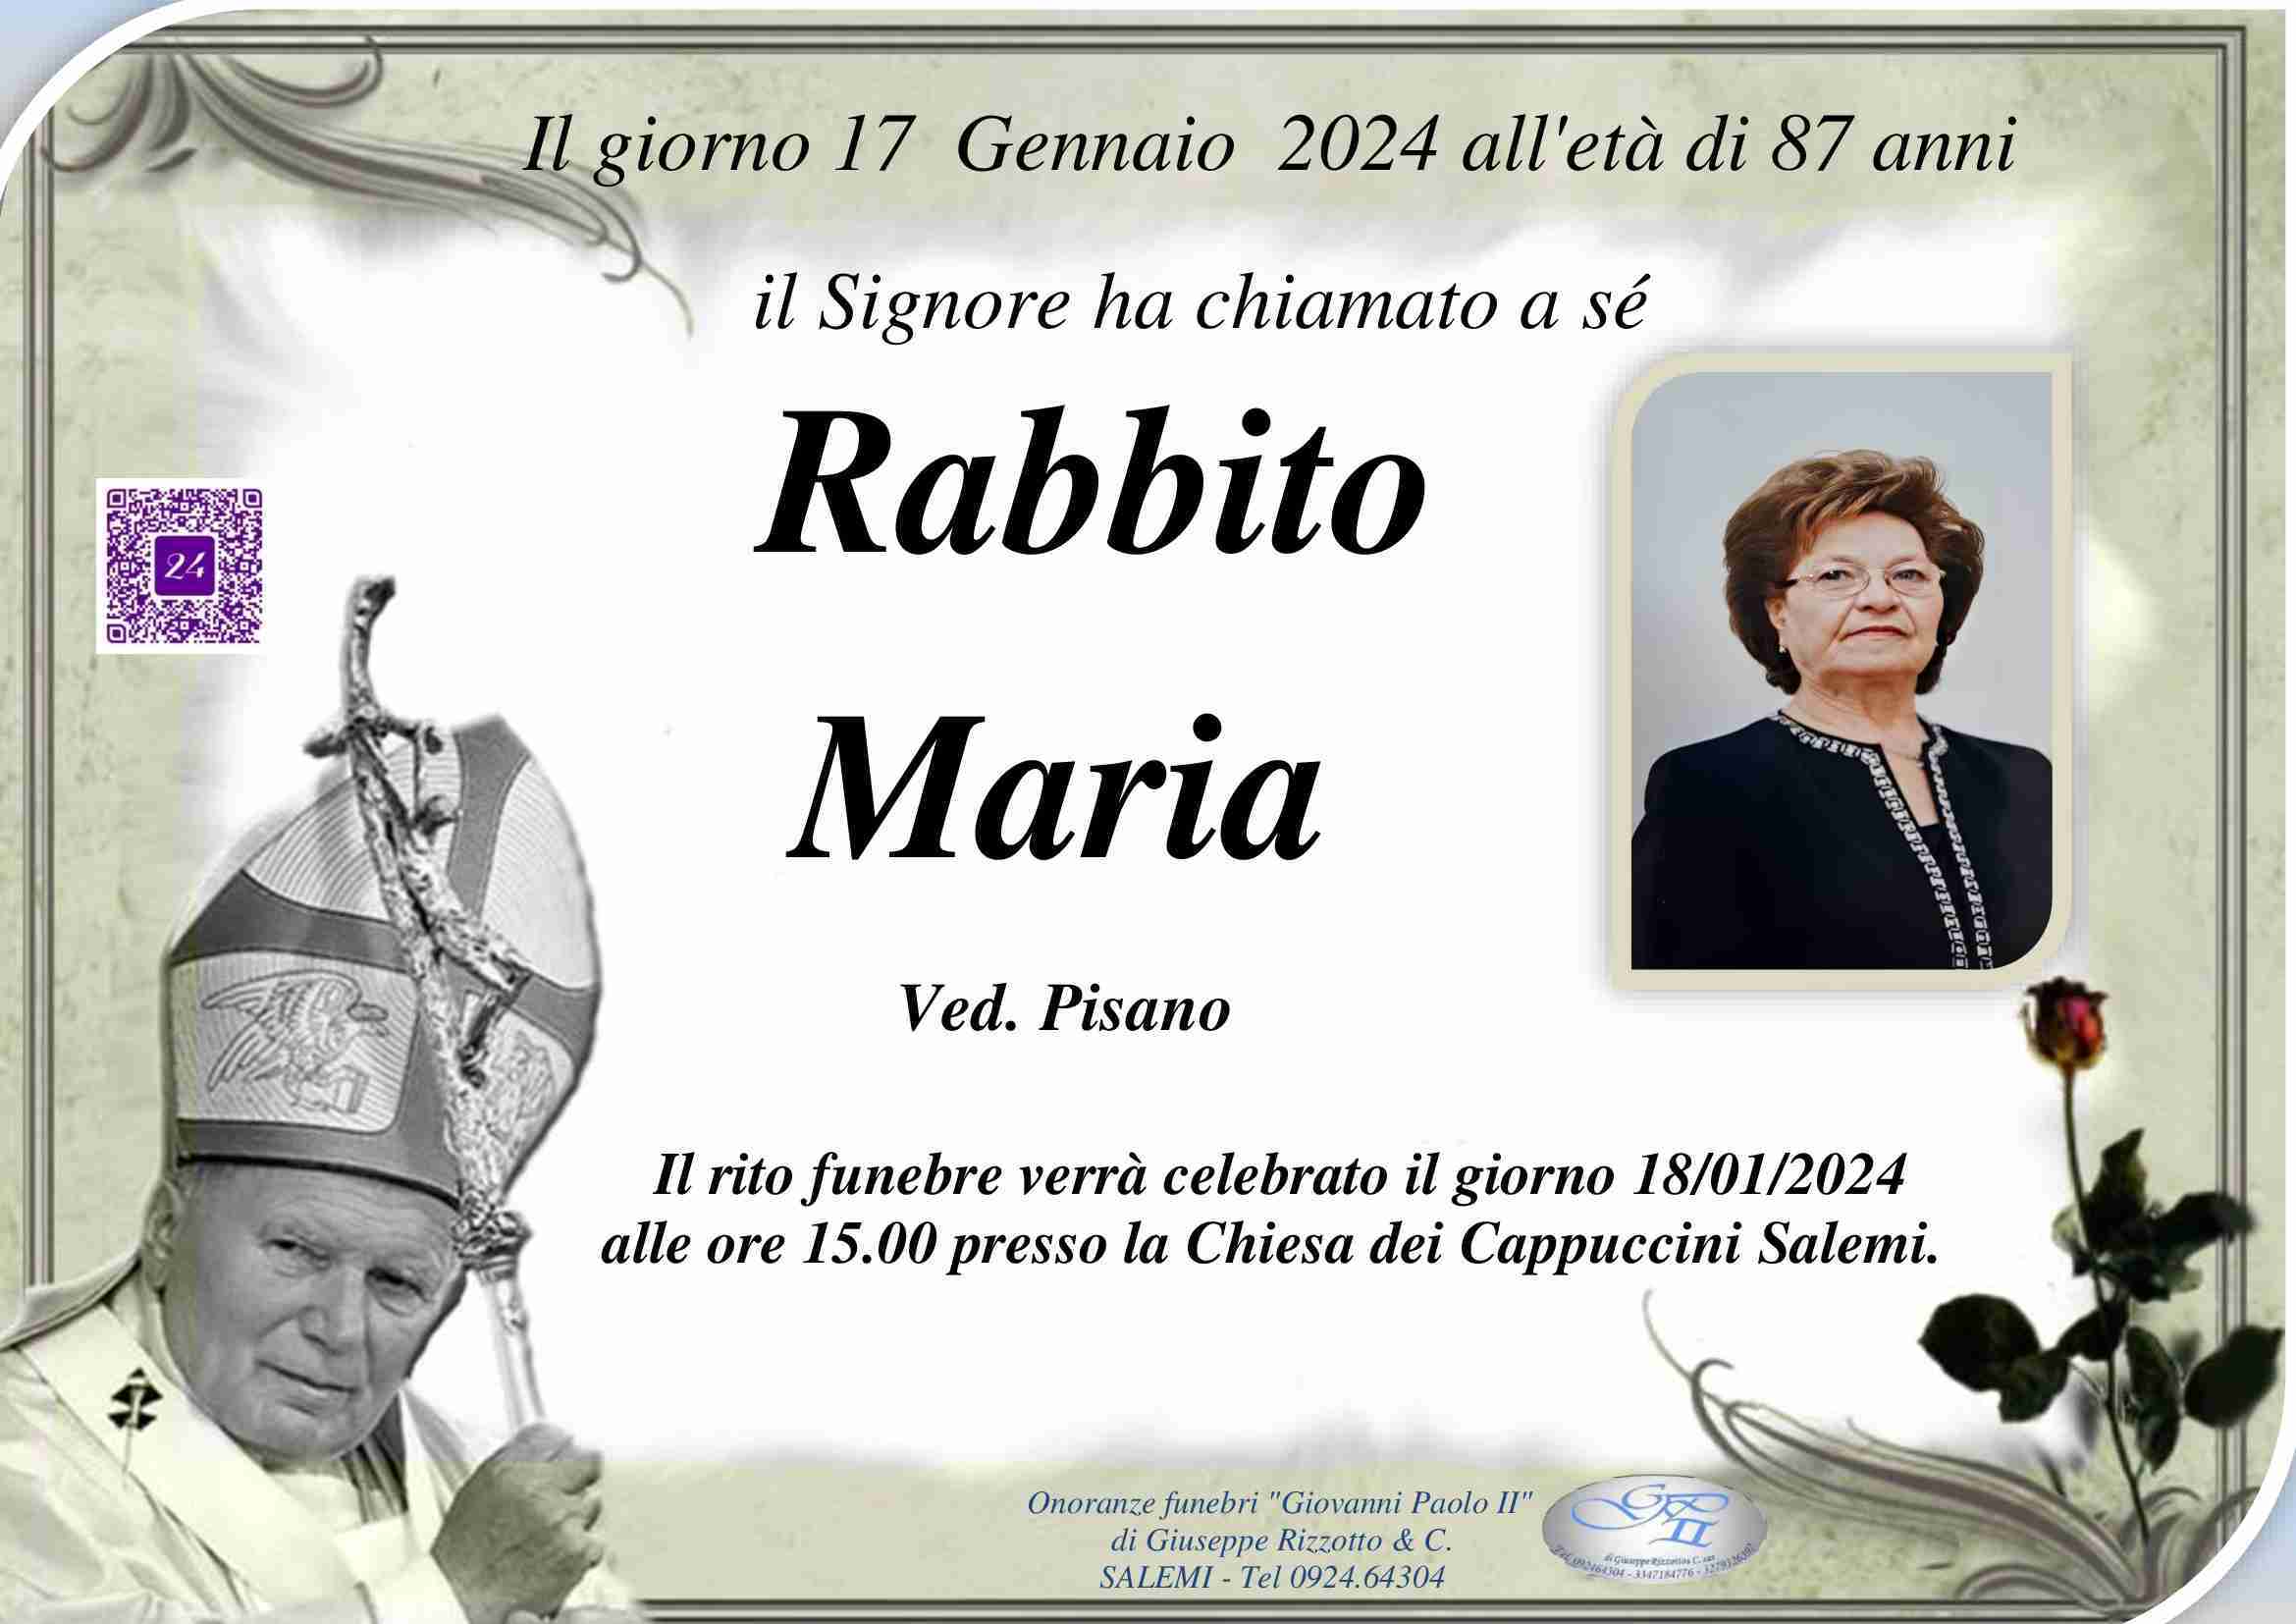 Maria Rabbito